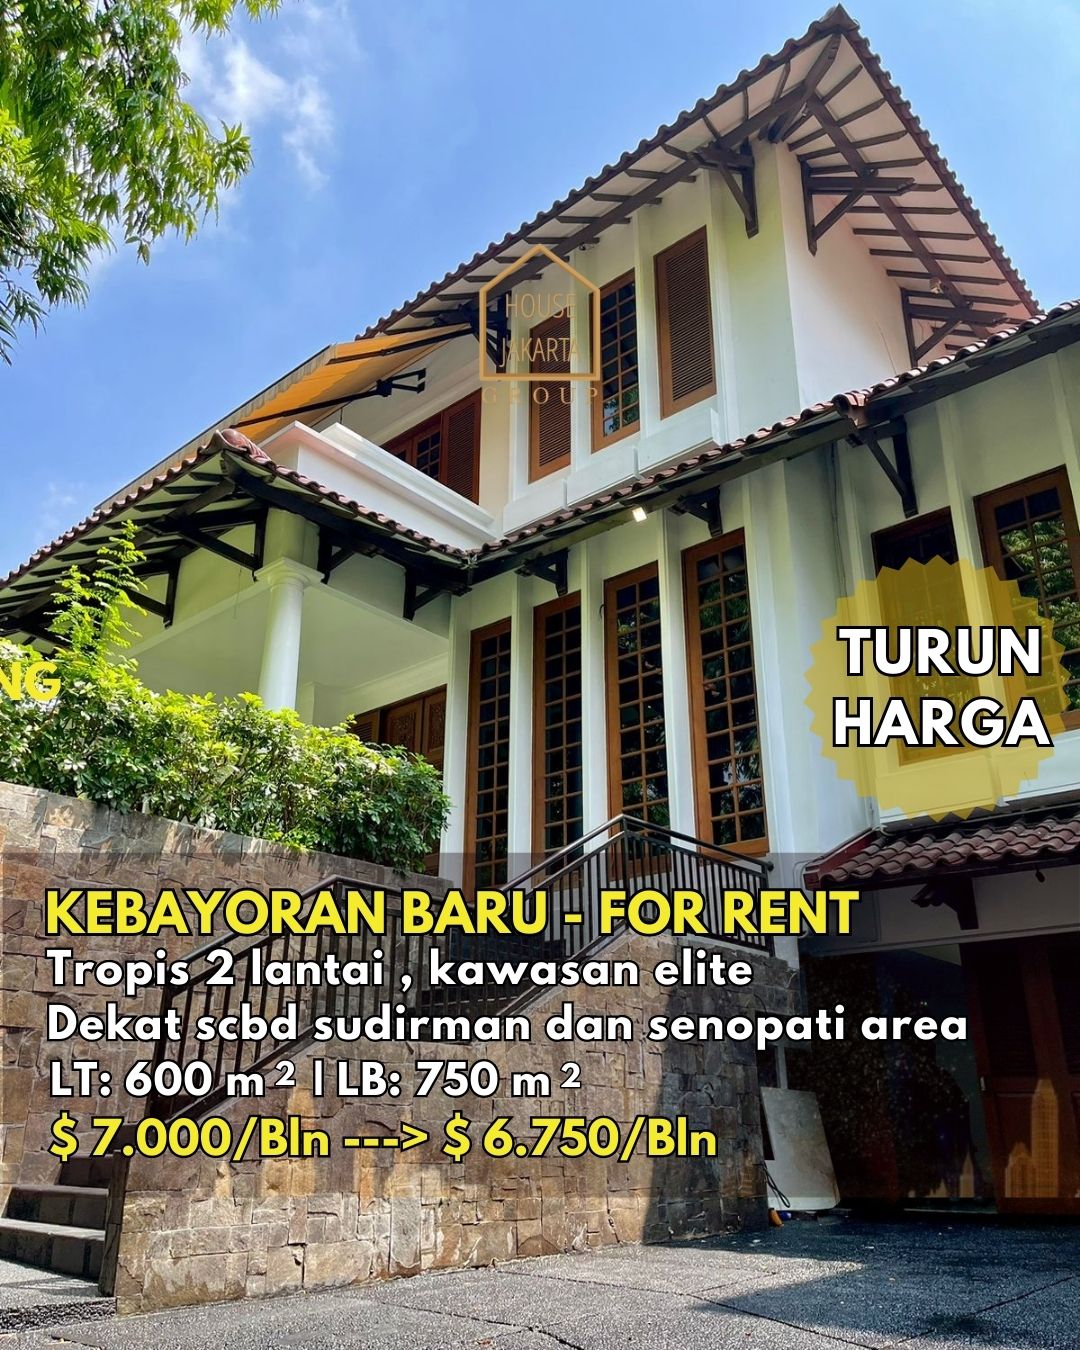 FOR RENT: TURUN HARGA!! Tropical House di Daerah Elite, Kebayoran Baru.